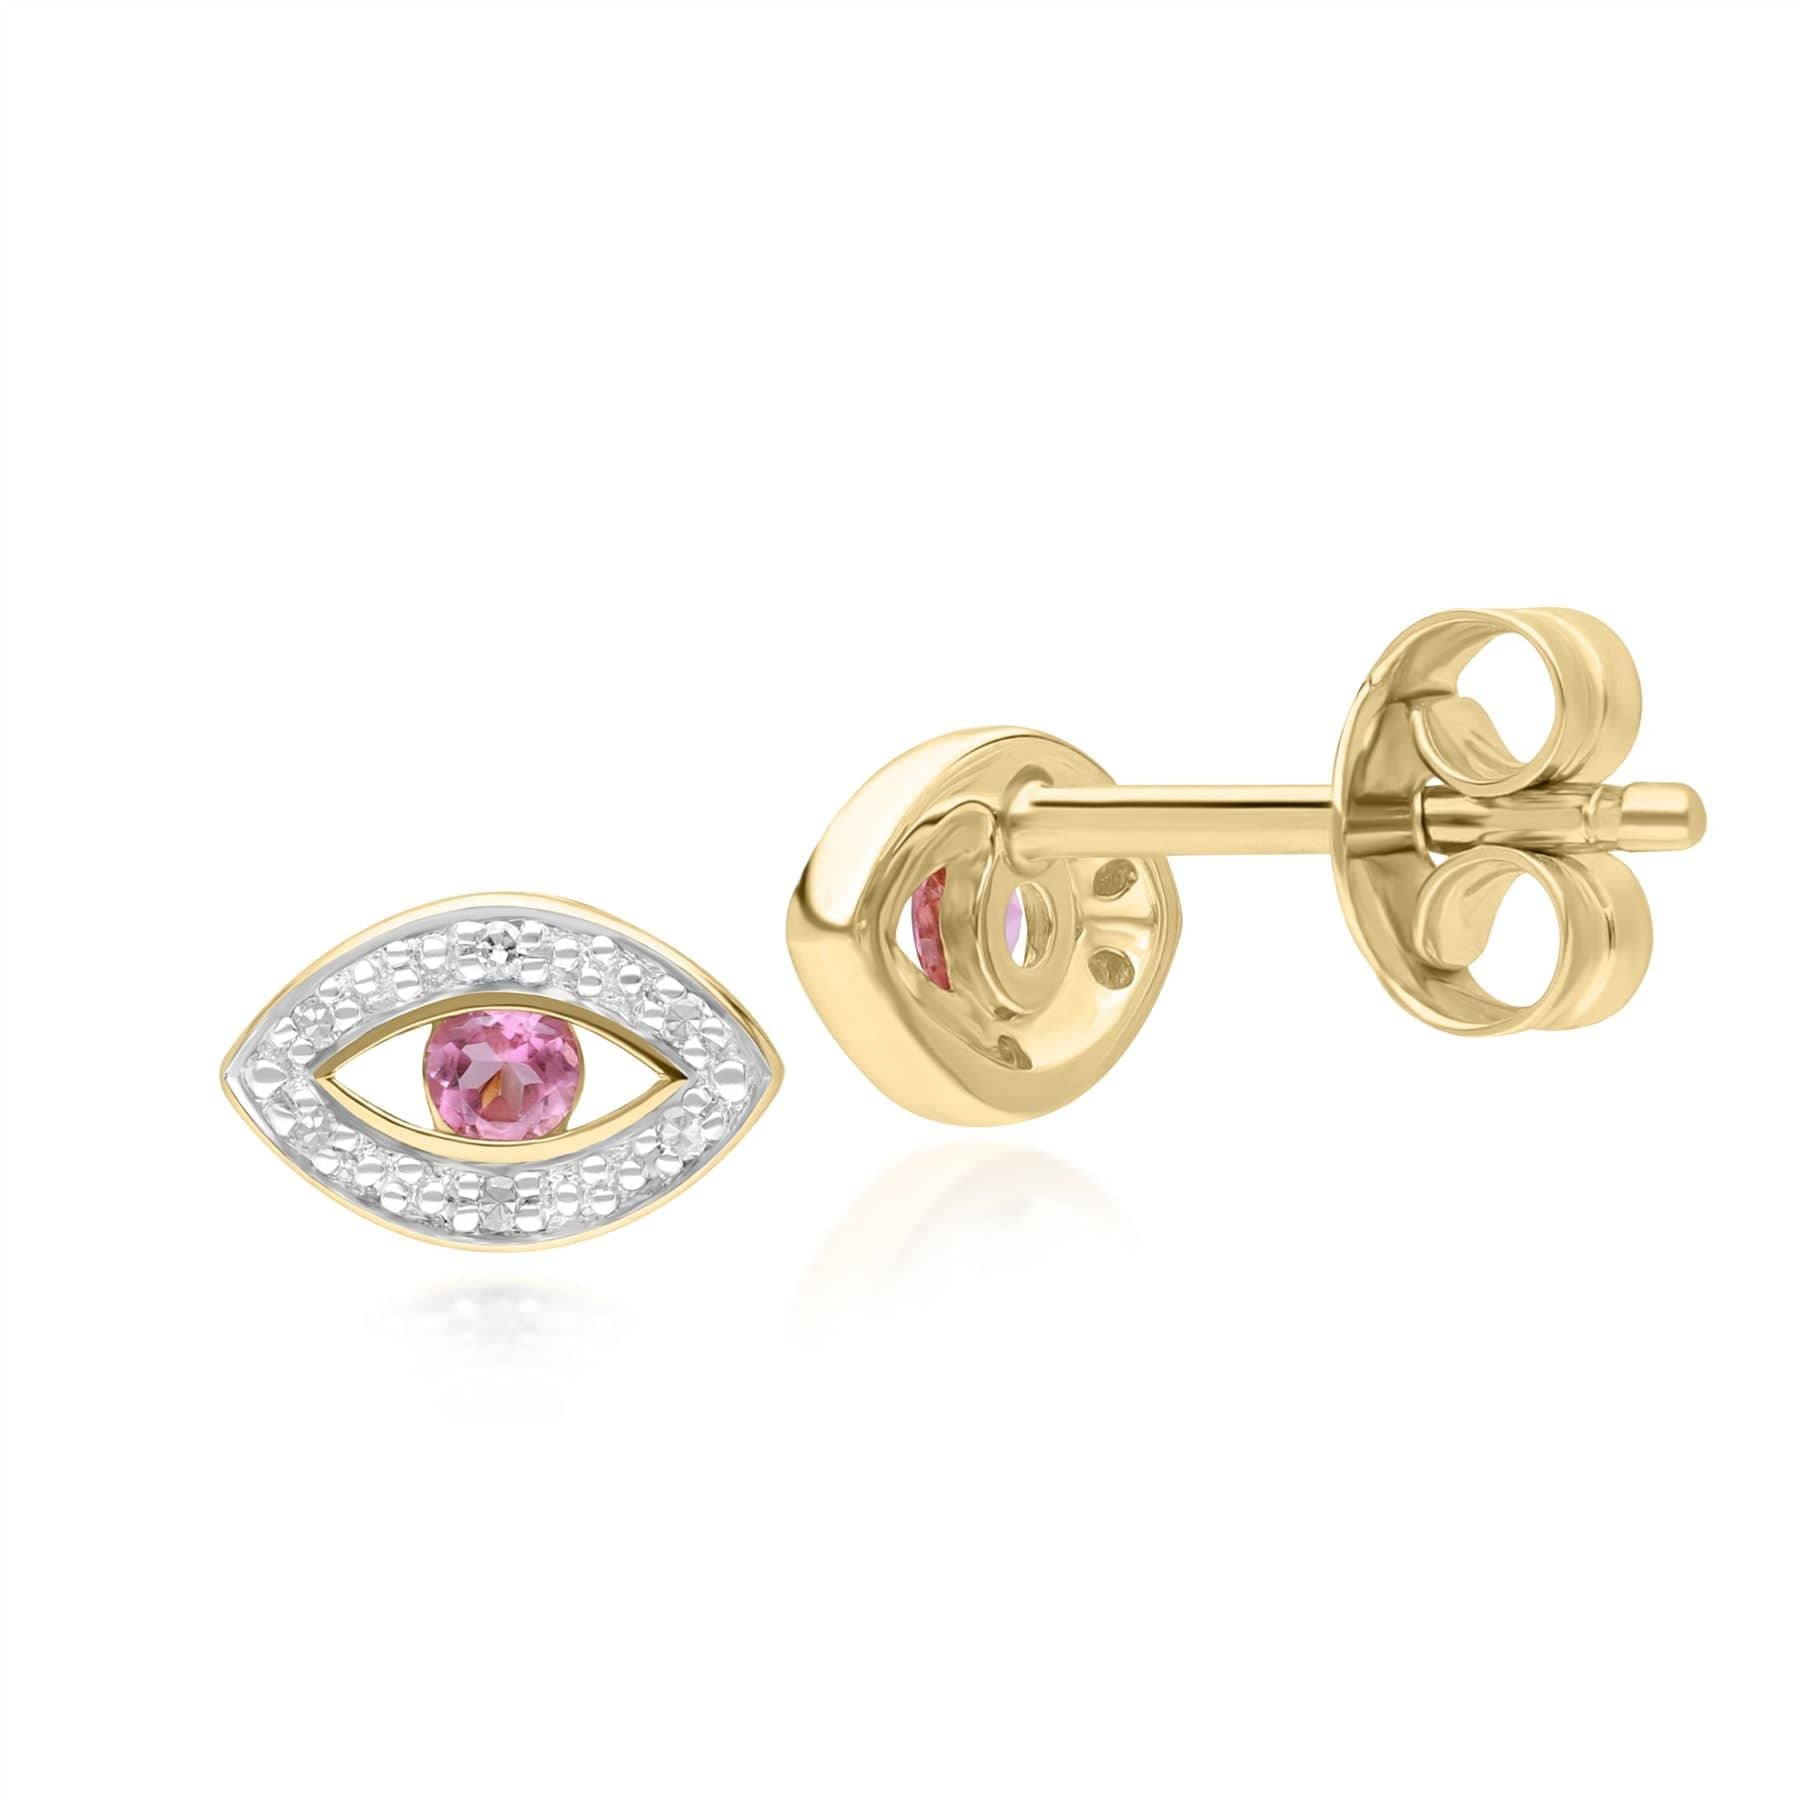 135E1824019 ECFEW™ Dainty Evil Eye Pink Tourmaline & Diamond Stud Earrings in 9ct Yellow Gold Side